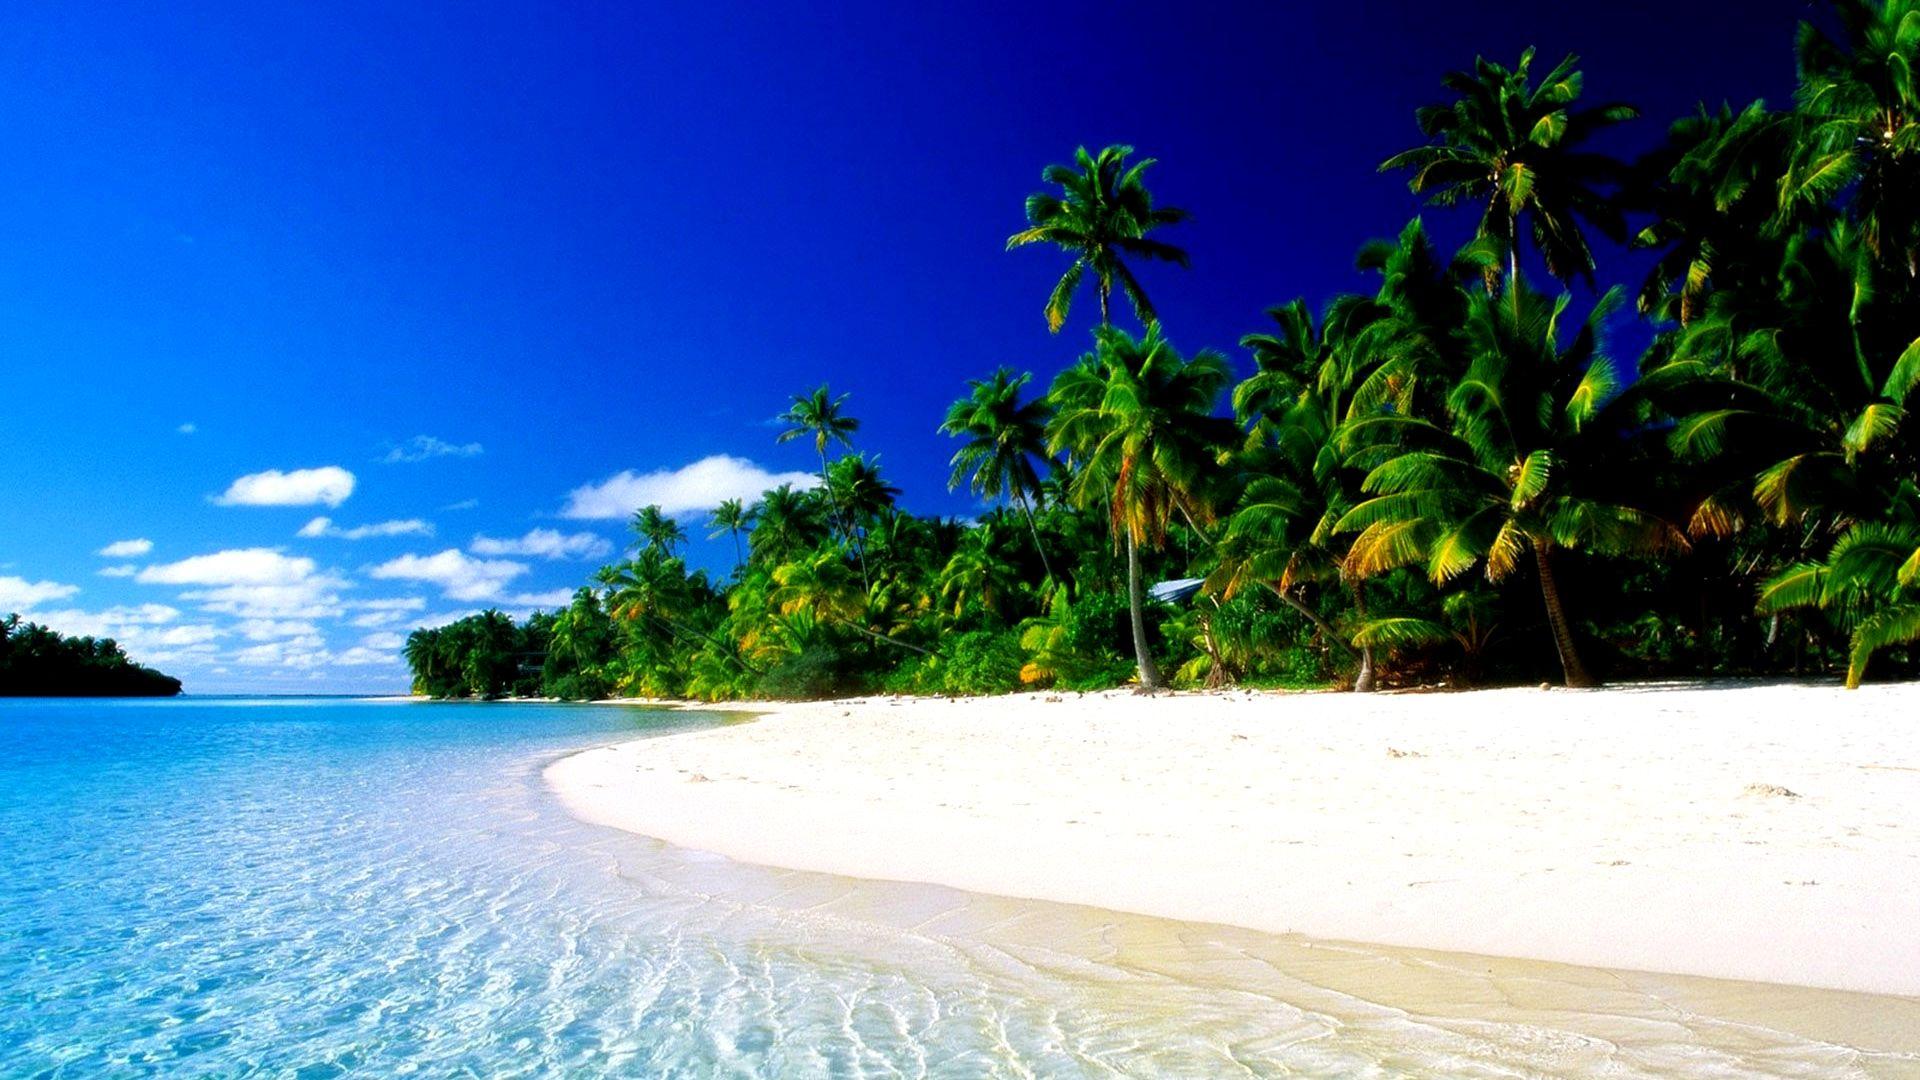 HD Tropical Paradise Wallpaper, beach, palms, ocean, tropical